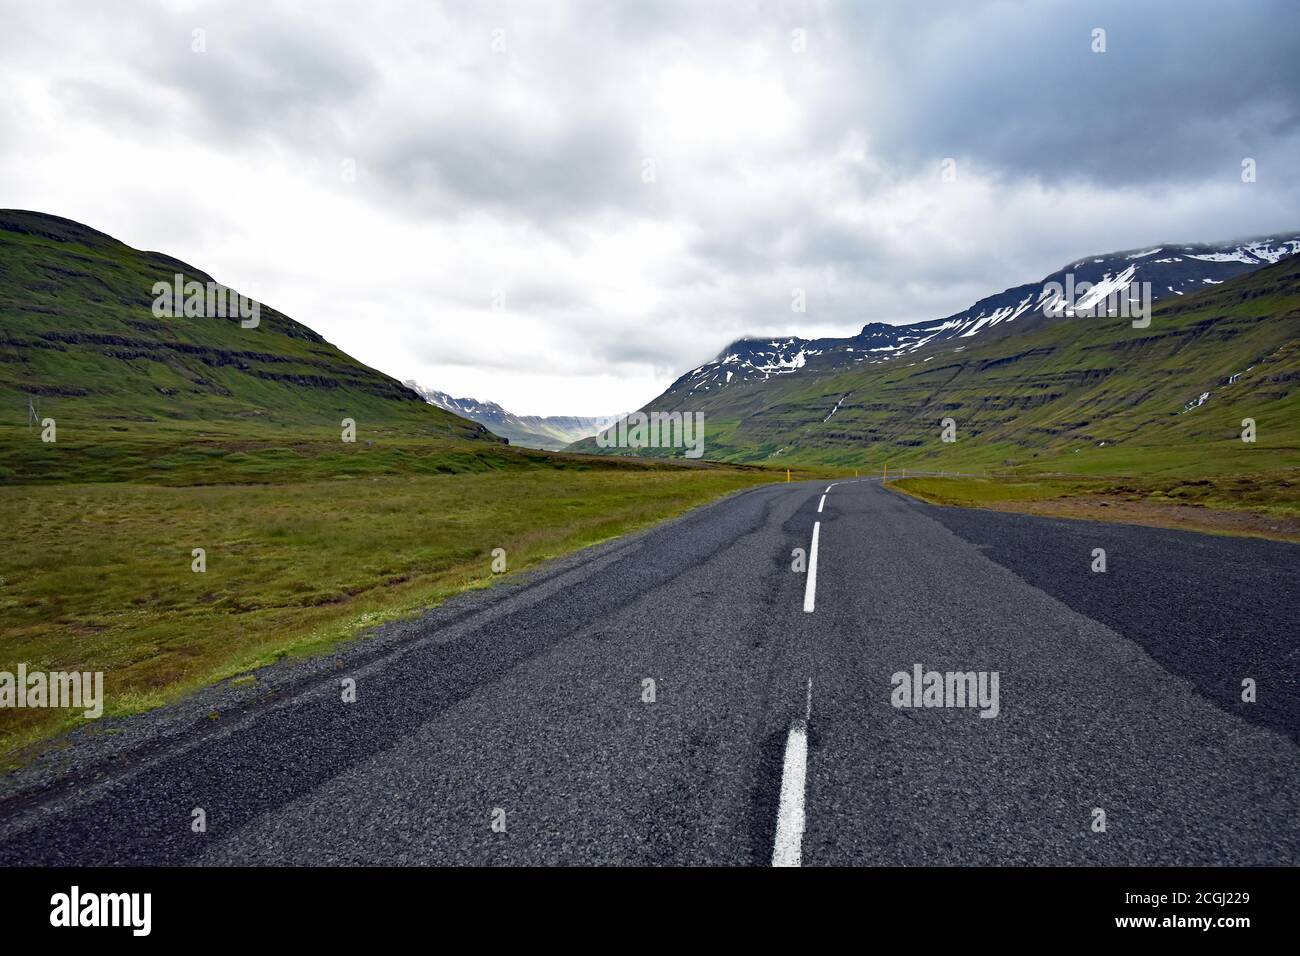 Eine Straße überquert die Berge in Seydisfjordur an einem bewölkten Tag. Die weißen Fahrbahnmarkierungen passen zum Schnee. Seydisfjardarvegur, Route 93, Island Stockfoto